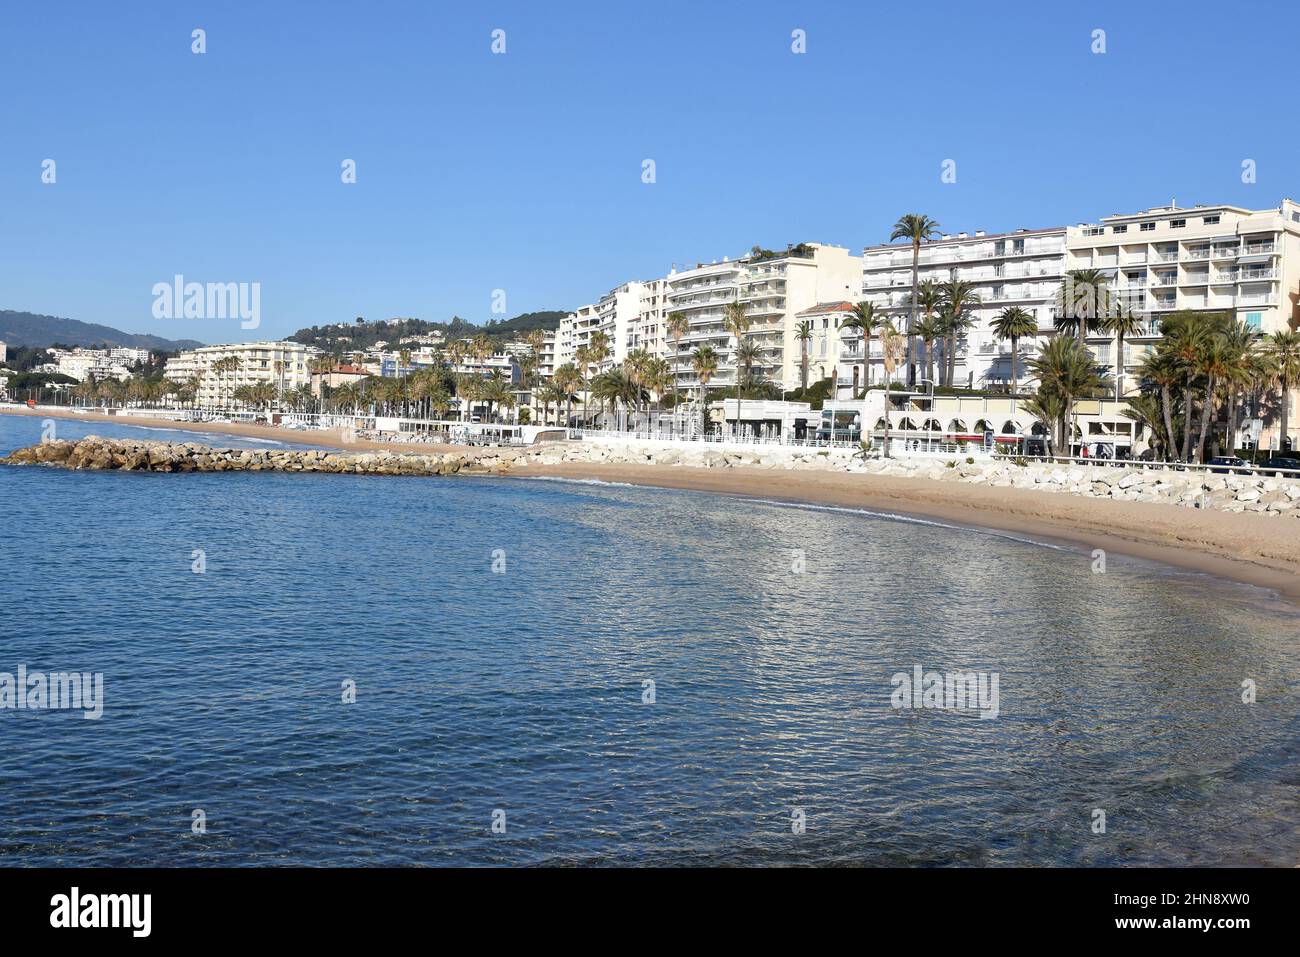 France, côte d'azur, Cannes, le bord de mer sur le boulevard du midi avec ses palmiers et ses plages de sable. Banque D'Images